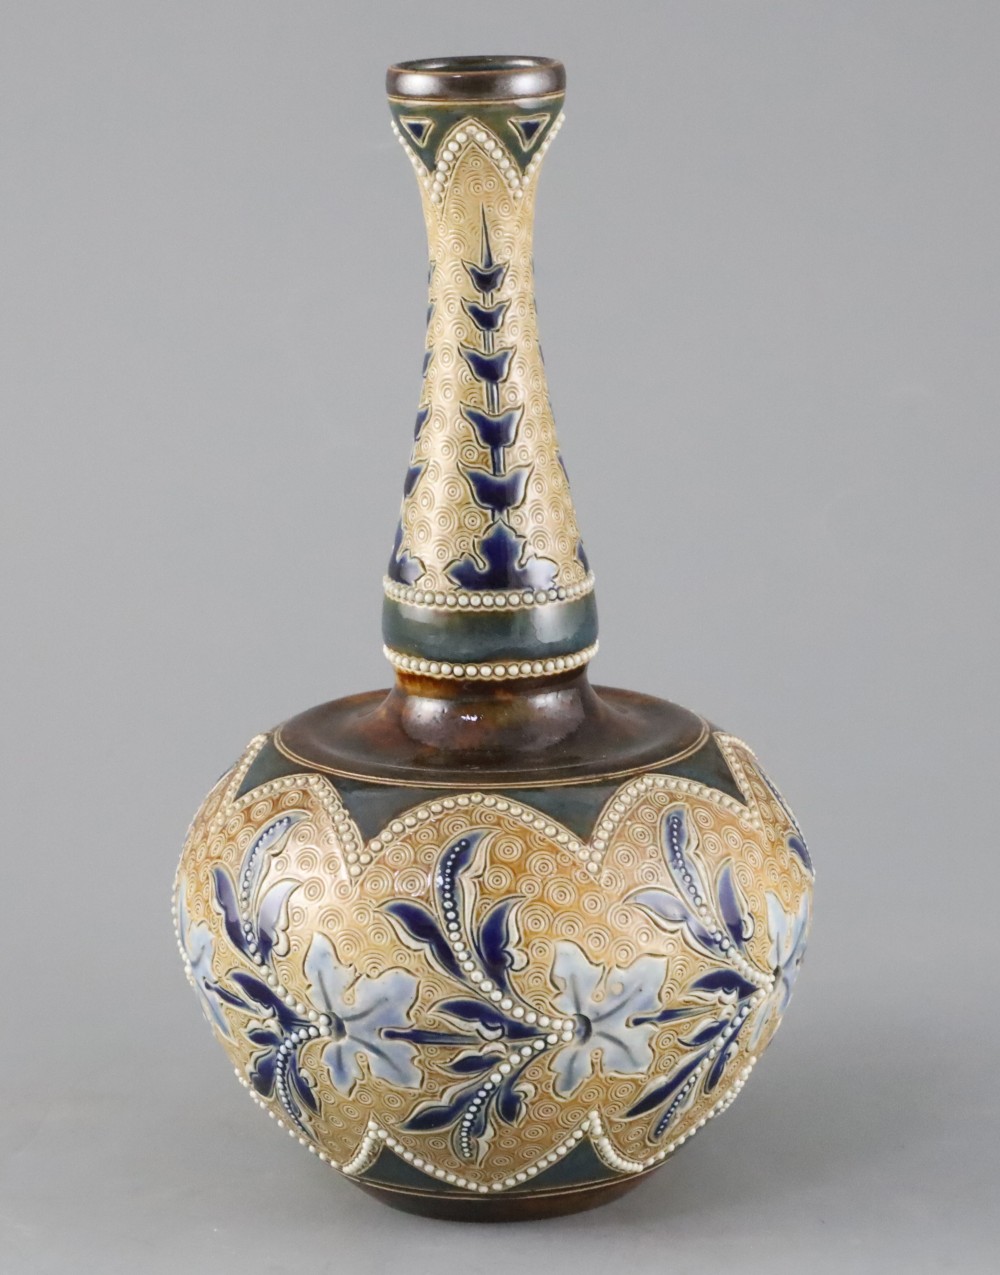 Emily E. Stormer for Doulton Lambeth, an Art Union of London bottle vase, c.1885,